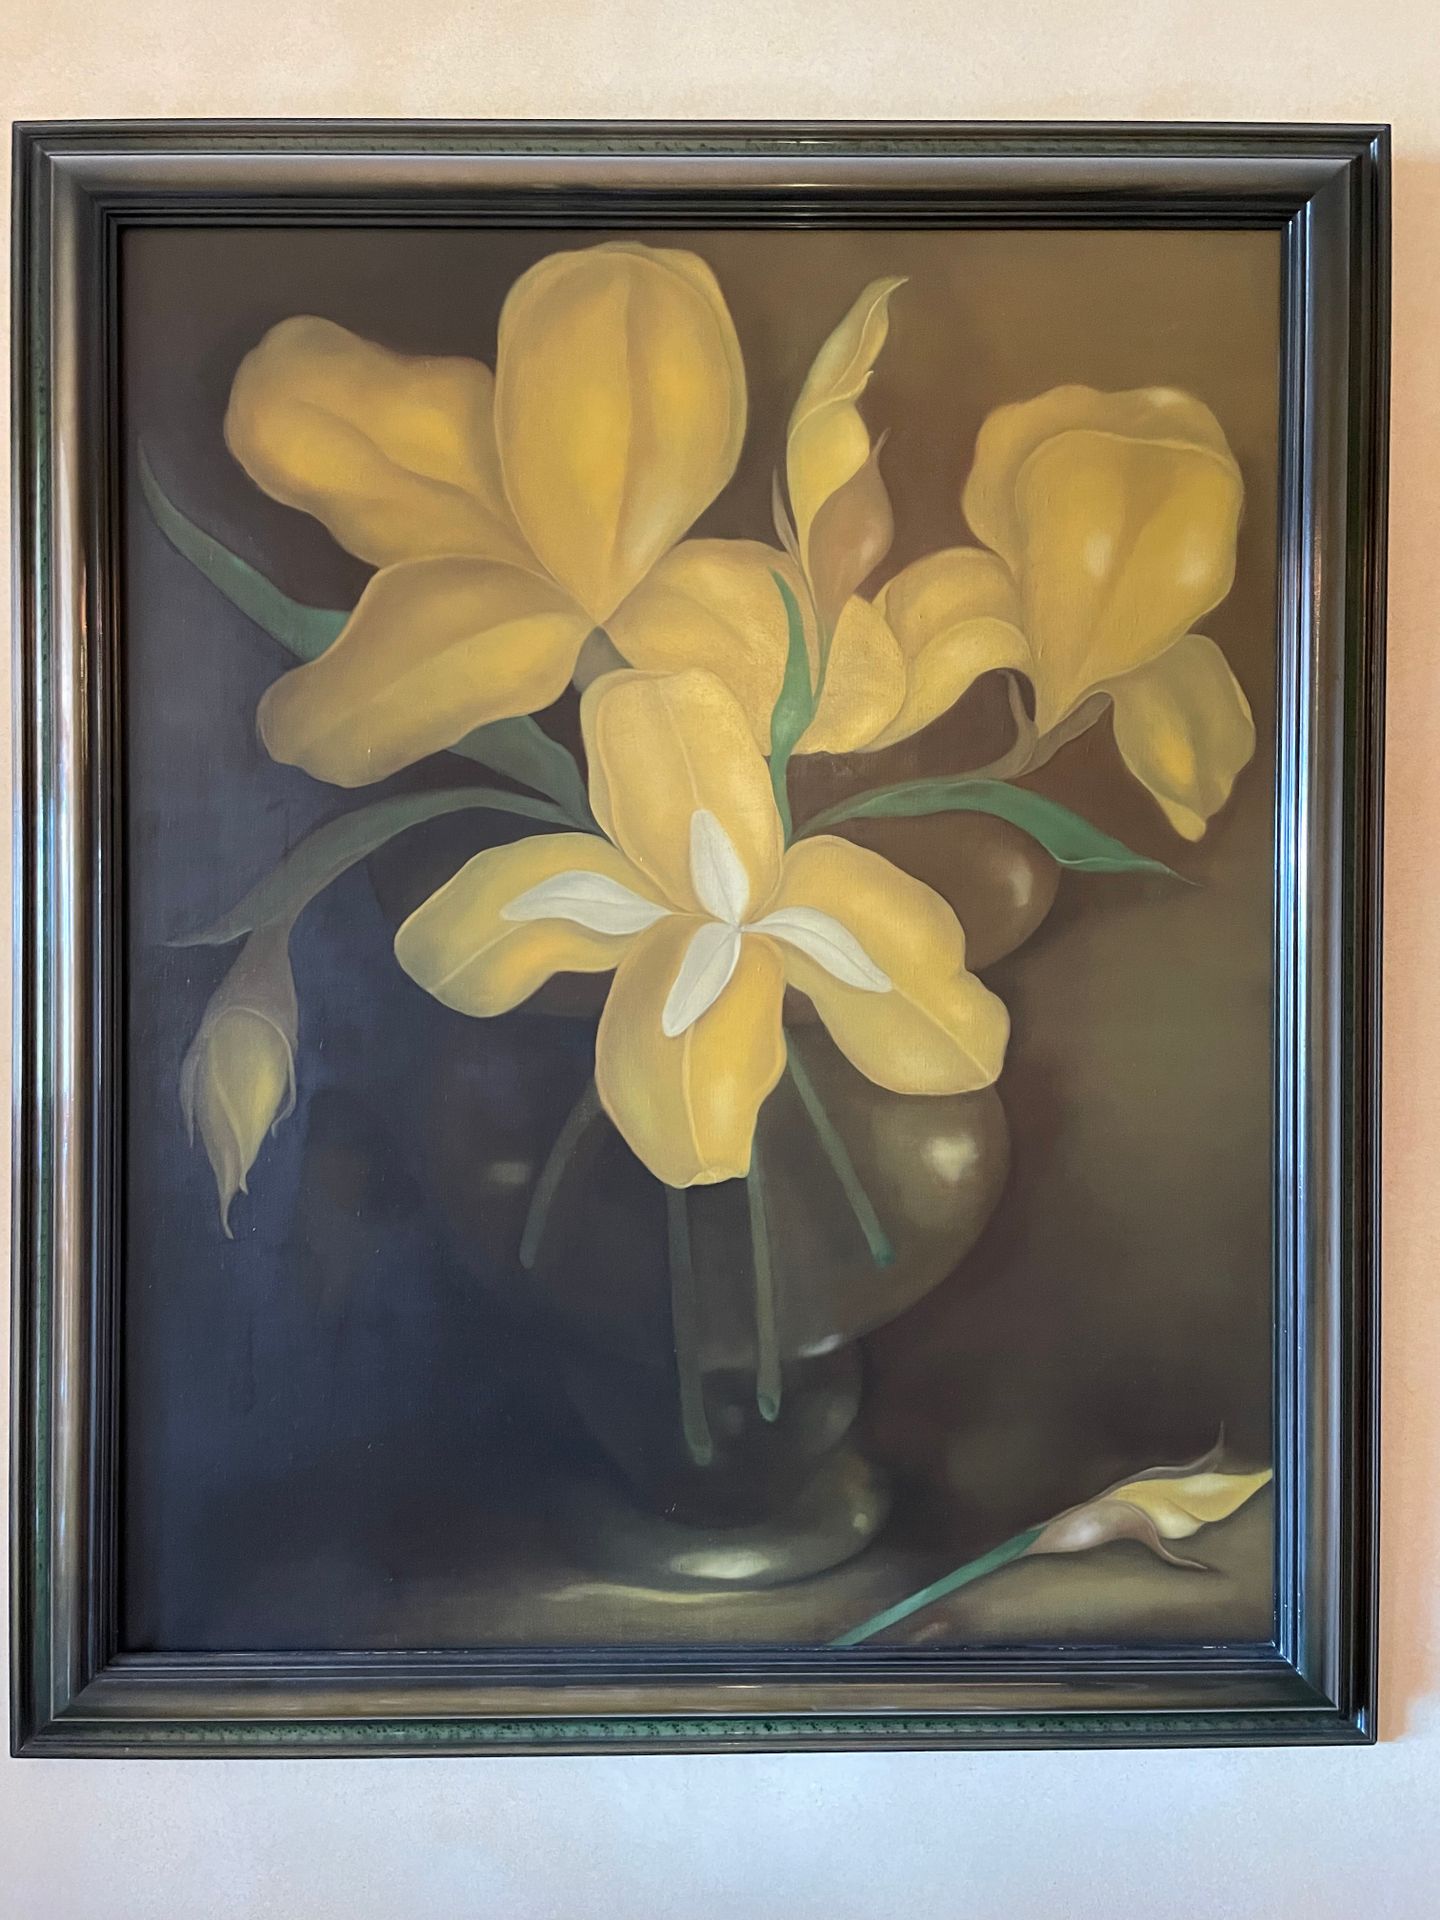 Ecole Moderne Vasen mit gelben Schwertlilien
Öl auf Leinwand
108x88 cm.